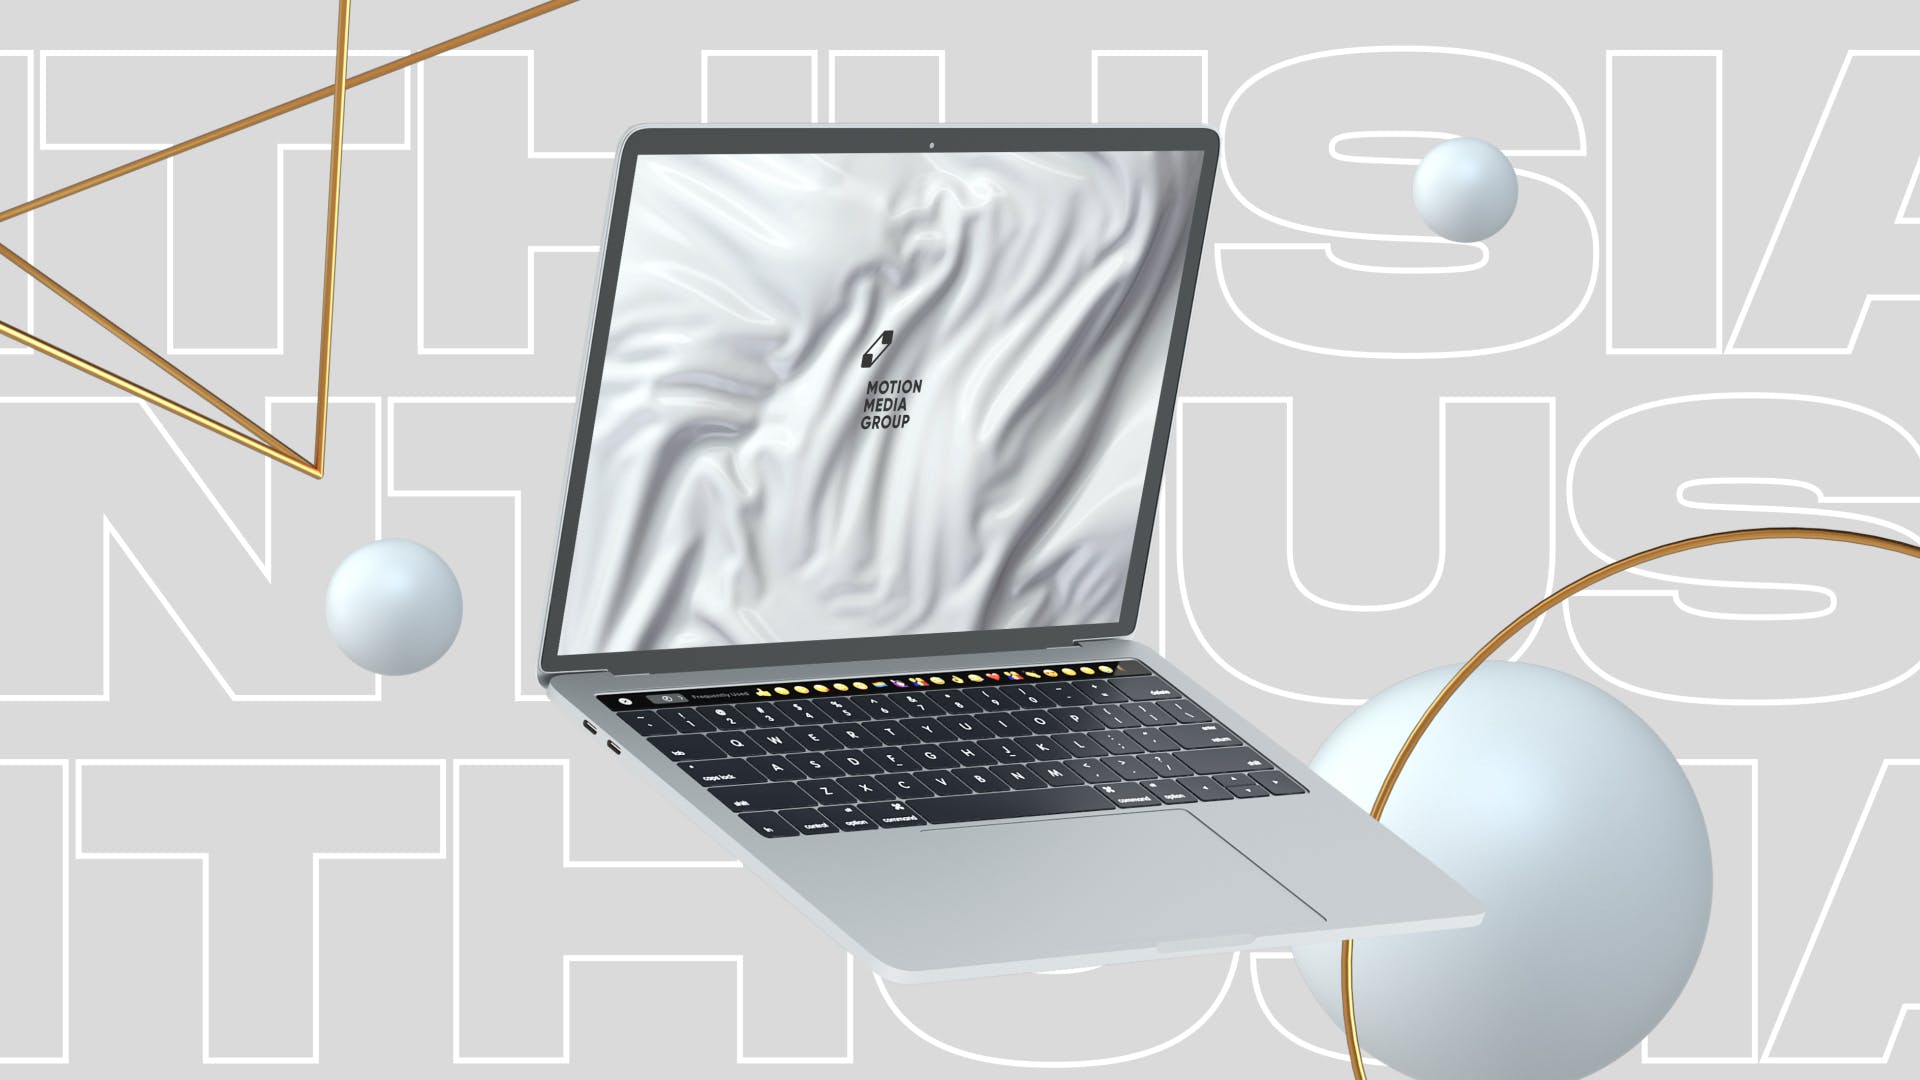 优雅时尚风格3D立体风格笔记本电脑屏幕预览素材库精选样机 10 Light Laptop Mockups插图(1)